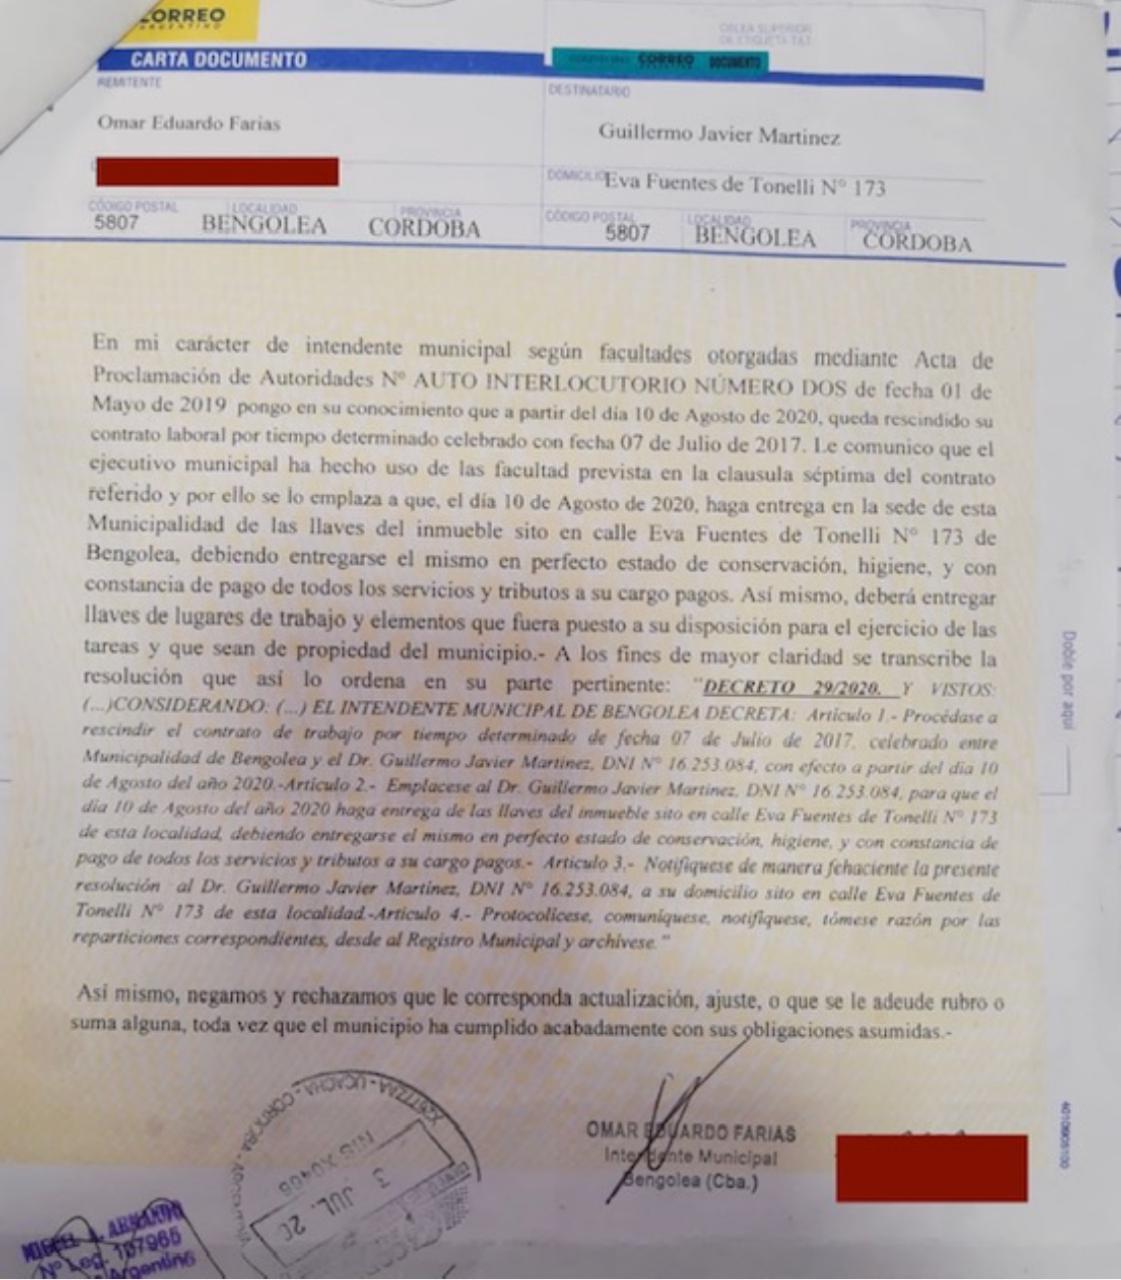 Carta Documento enviada por la Municipalidad de Bengolea pidiendo la cesación de servicios médicos de Guillermo Martínez.